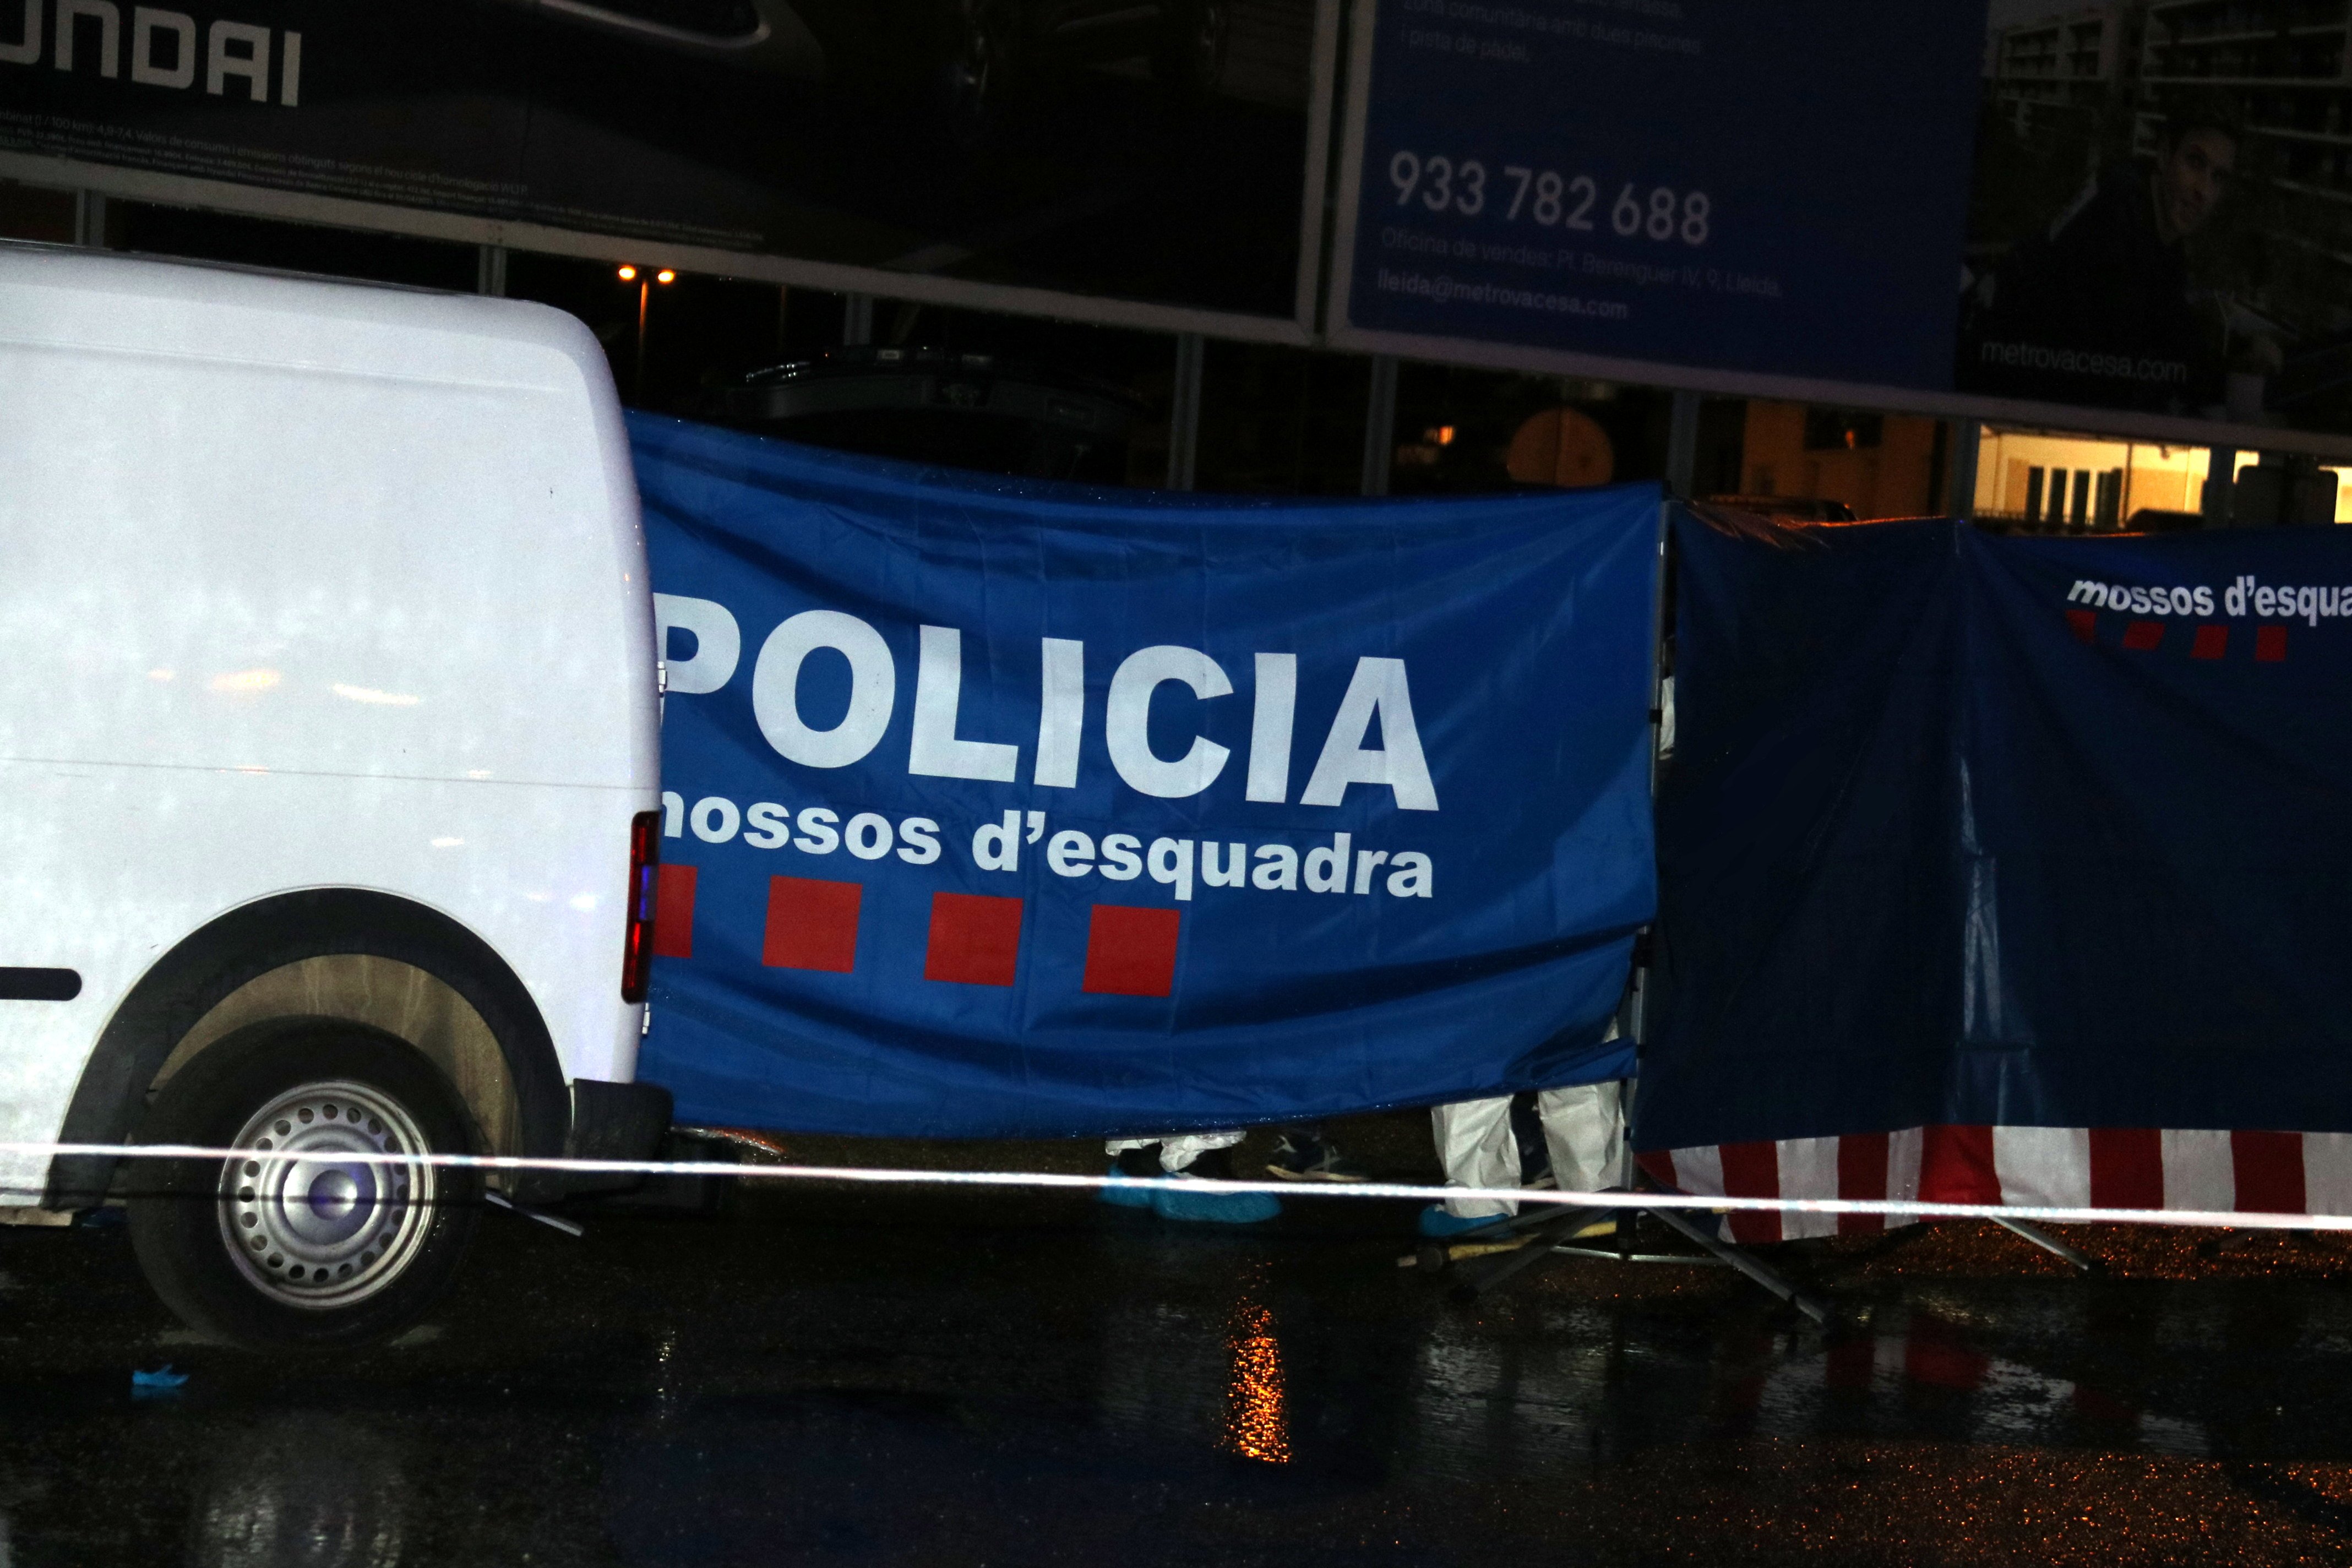 Policia Mossos / Lleida